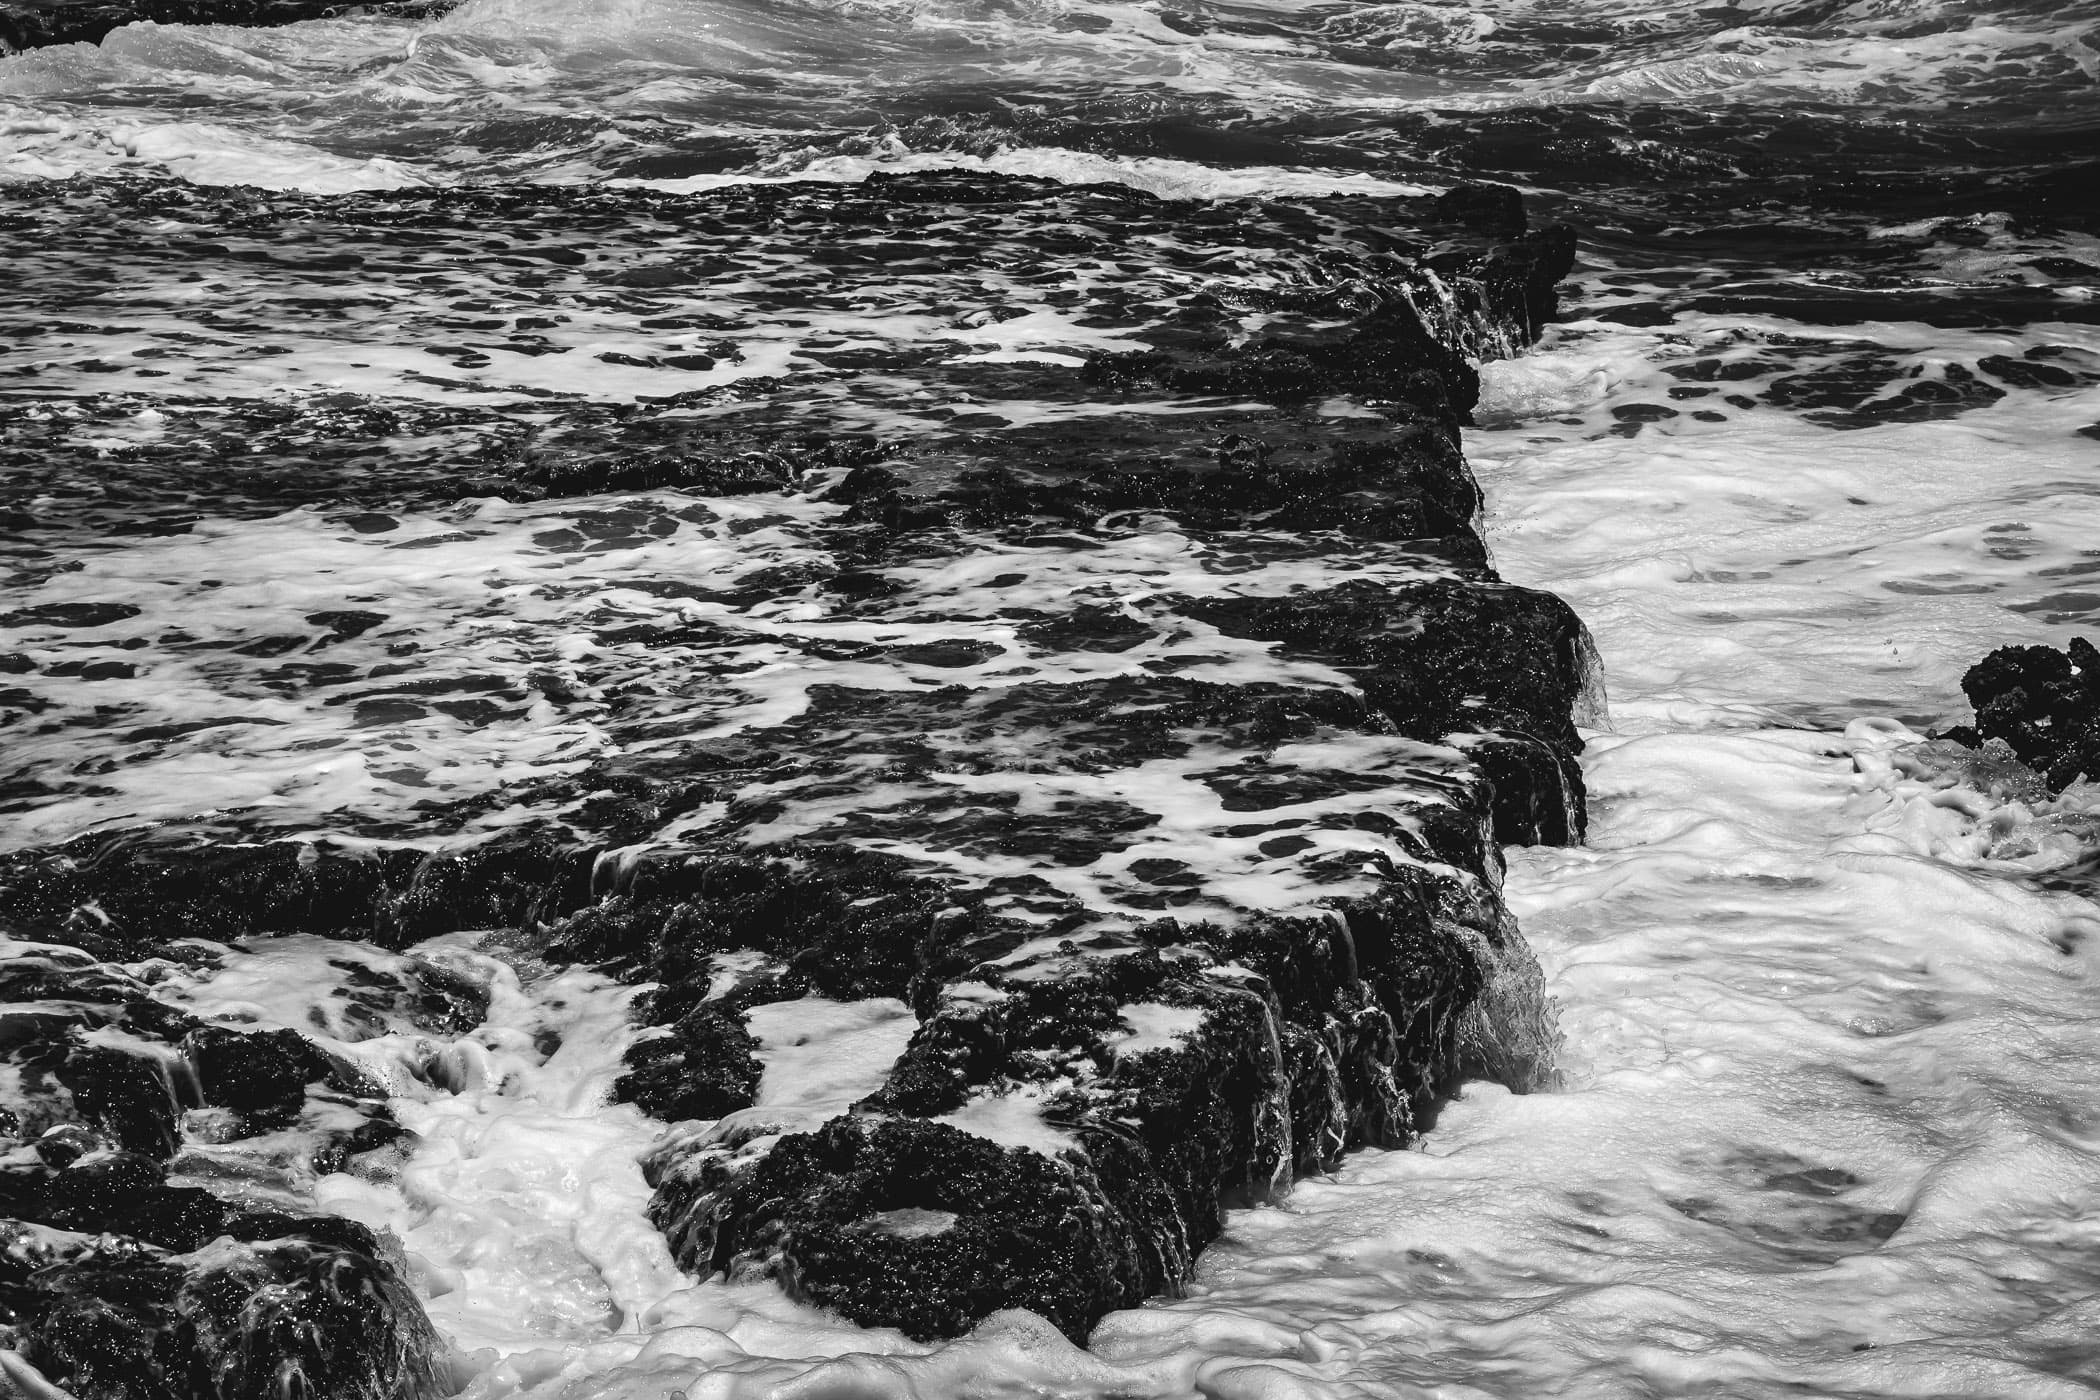 Atlantic Ocean waves drain over the rocky shoreline at El Mirador, Cozumel, Mexico.